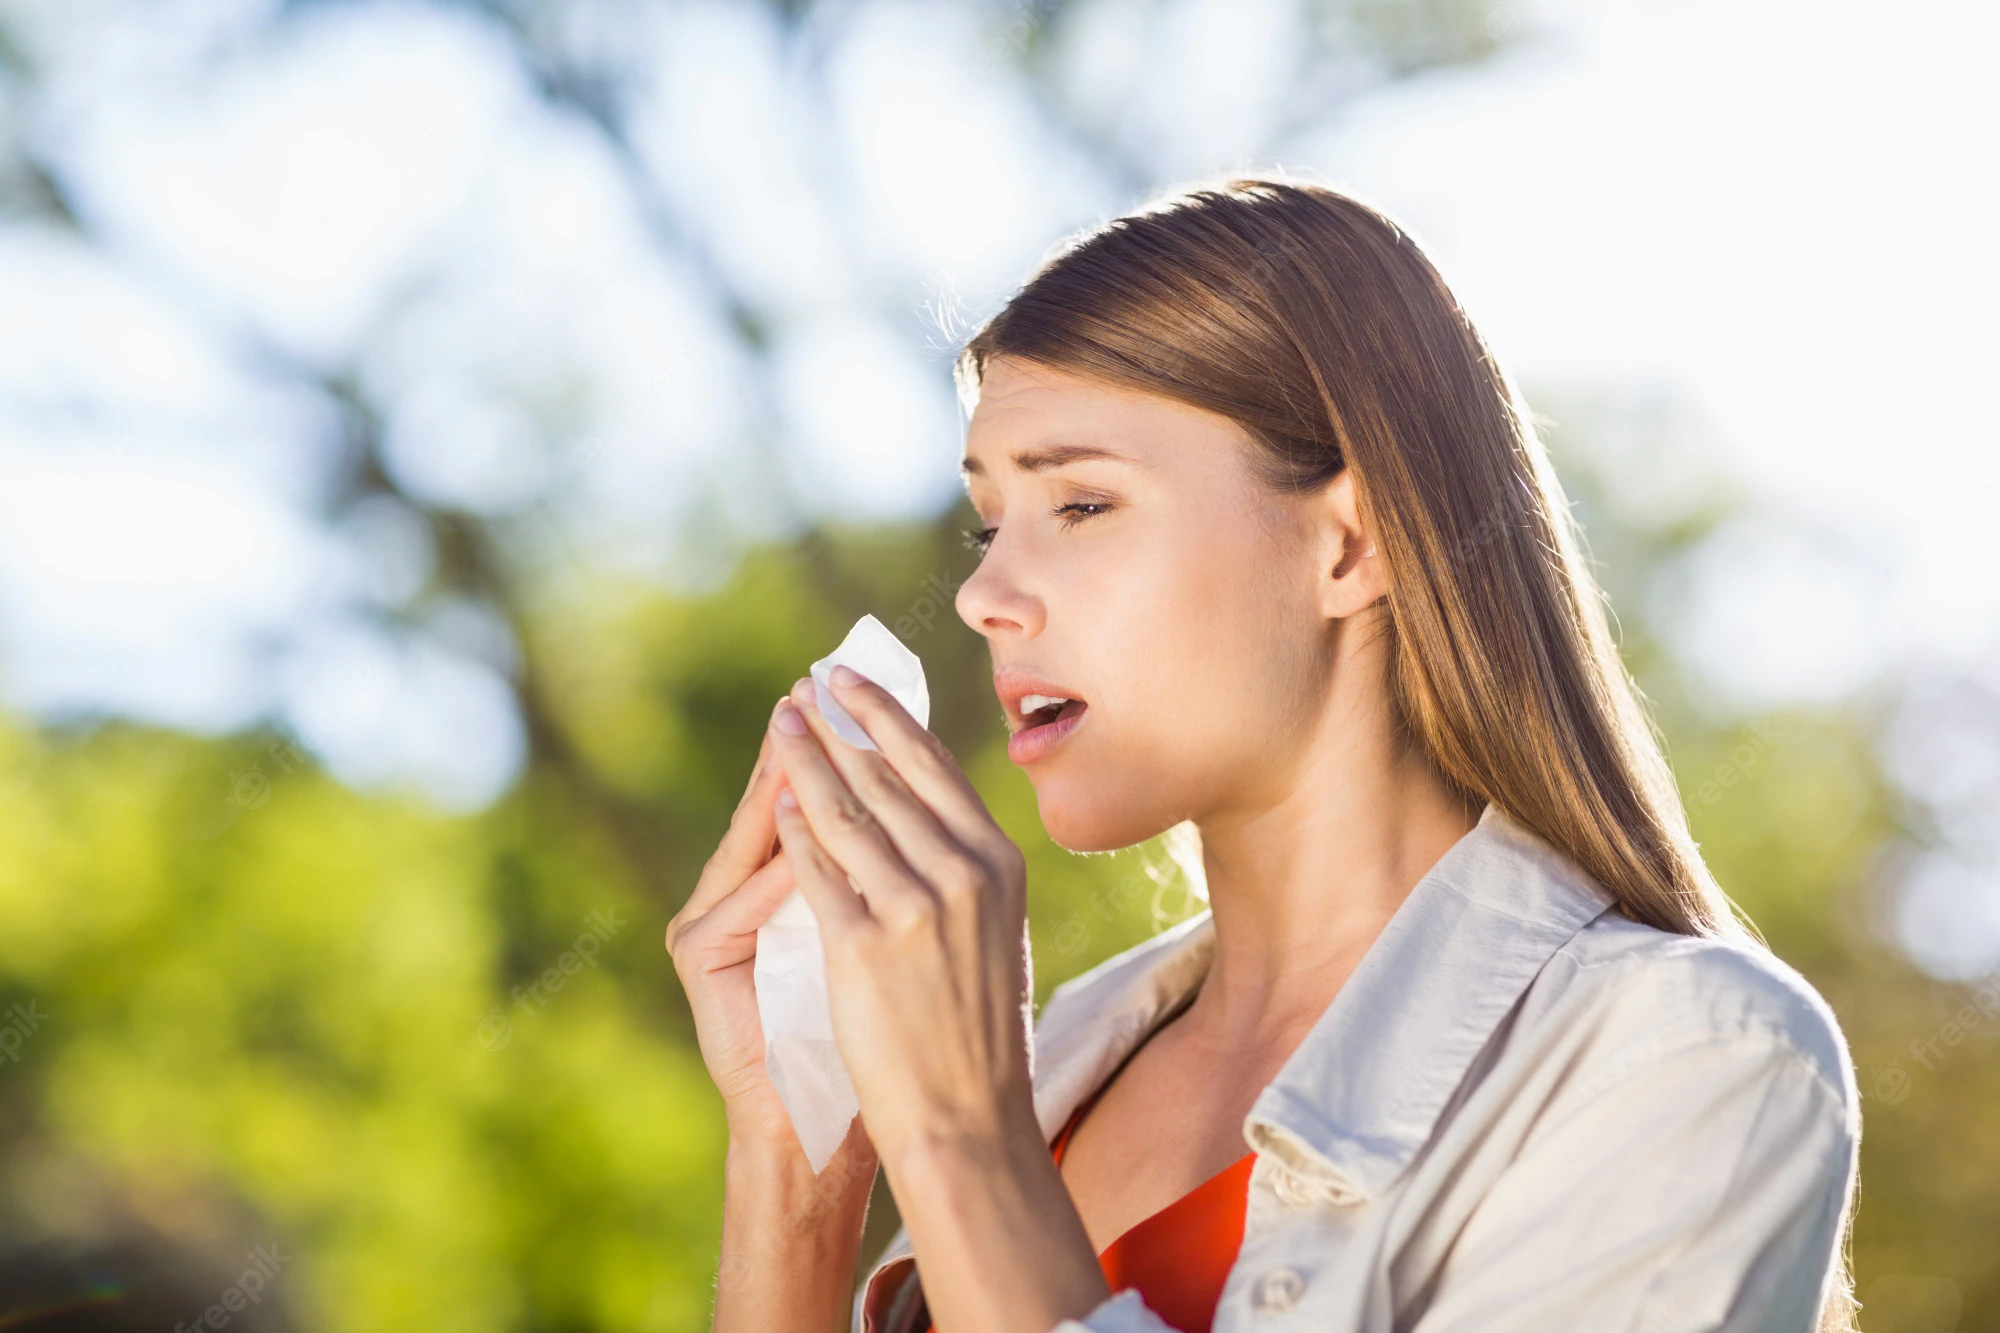 Αλλεργία: Οι στάσεις των άλλων επηρεάζουν σοβαρά την ψυχική υγεία ατόμων με αλλεργία